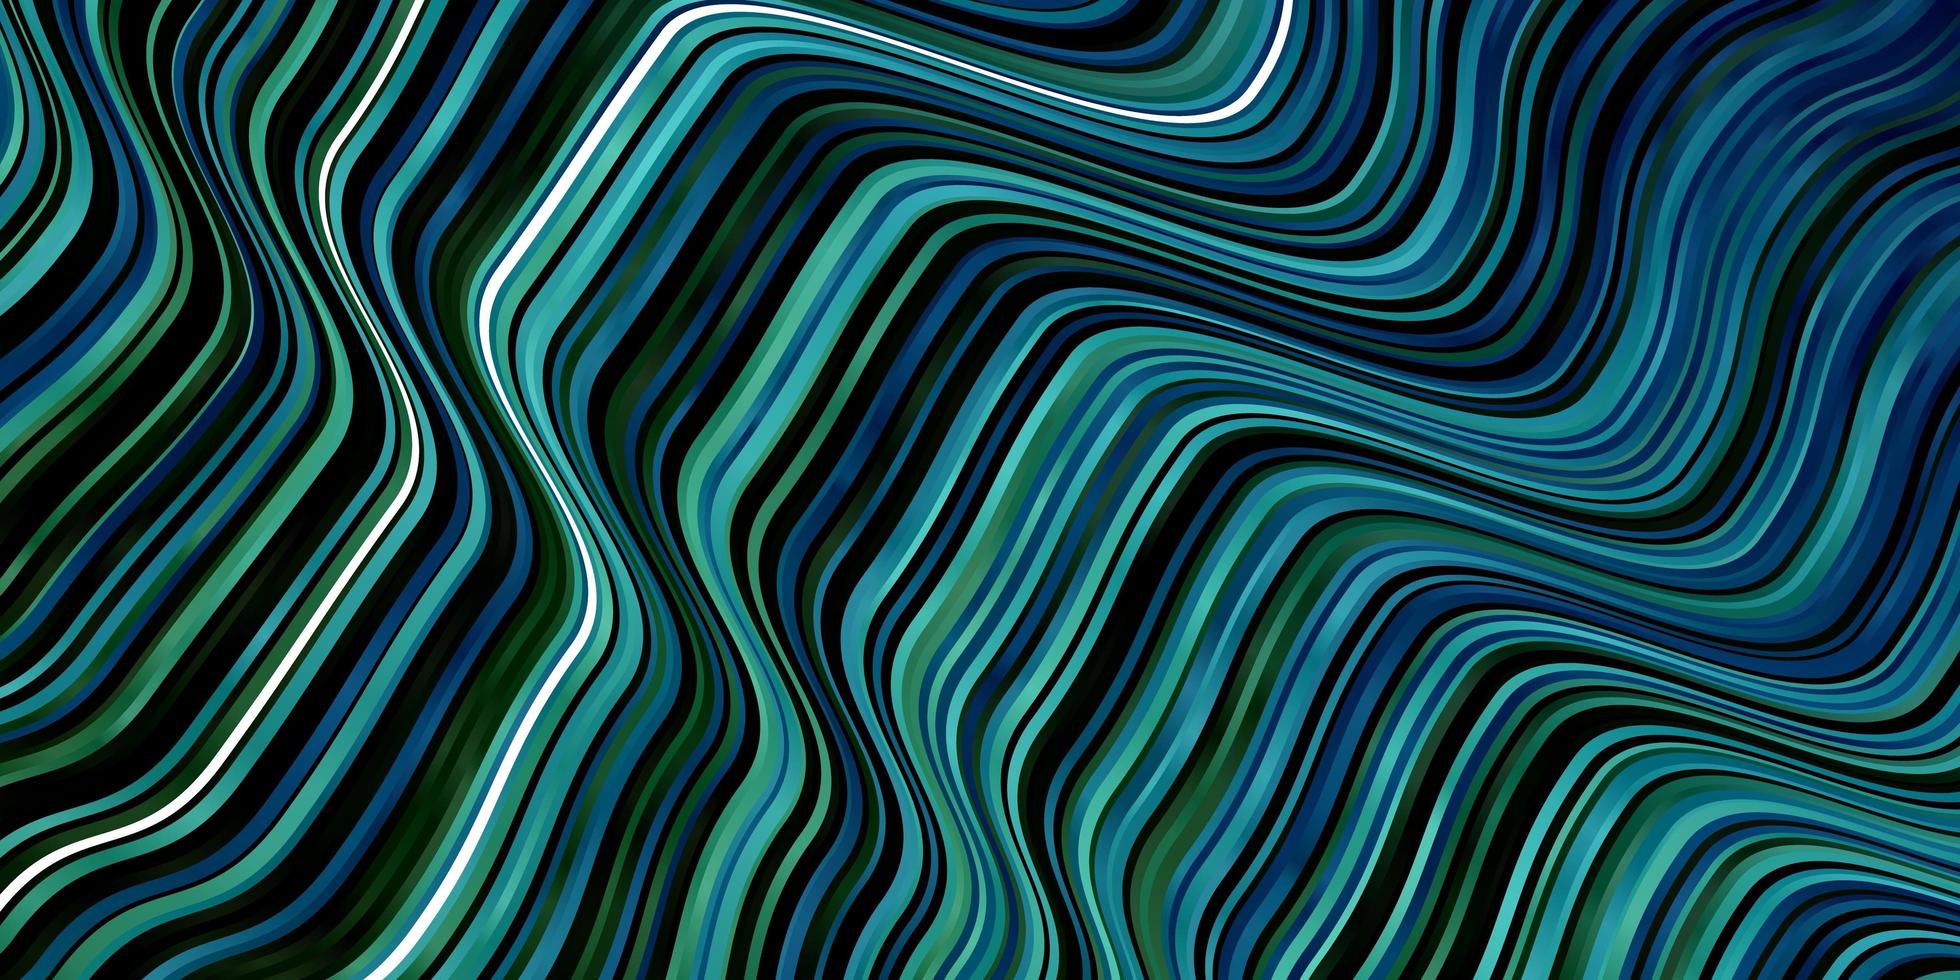 fond de vecteur vert bleu clair avec des arcs échantillon géométrique coloré avec motif de courbes dégradées pour les publicités